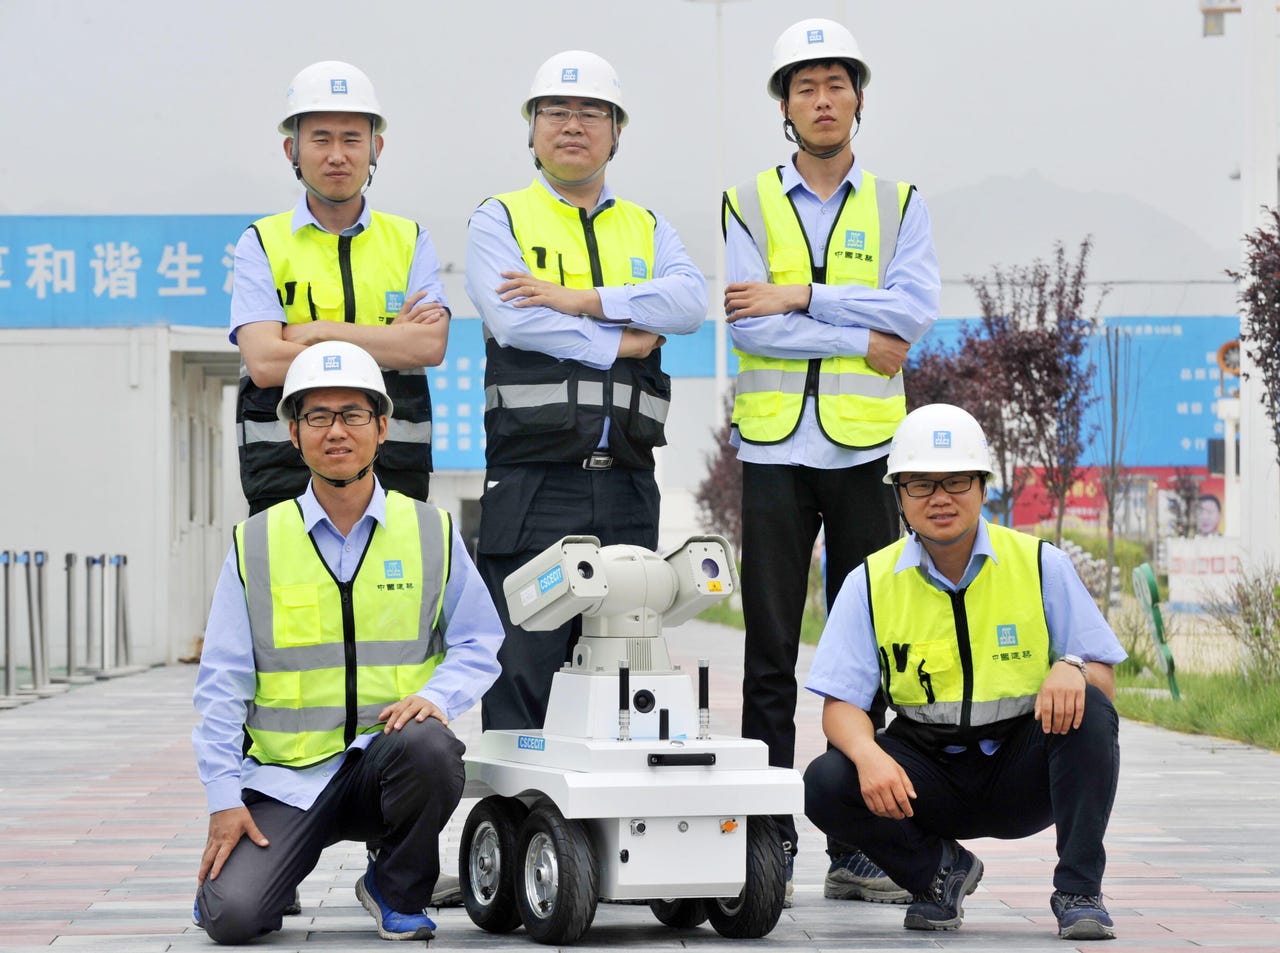 Cinq personnes en tenue de sécurité ont posé pour une photo d'équipe avec un robot d'inspection à roues.